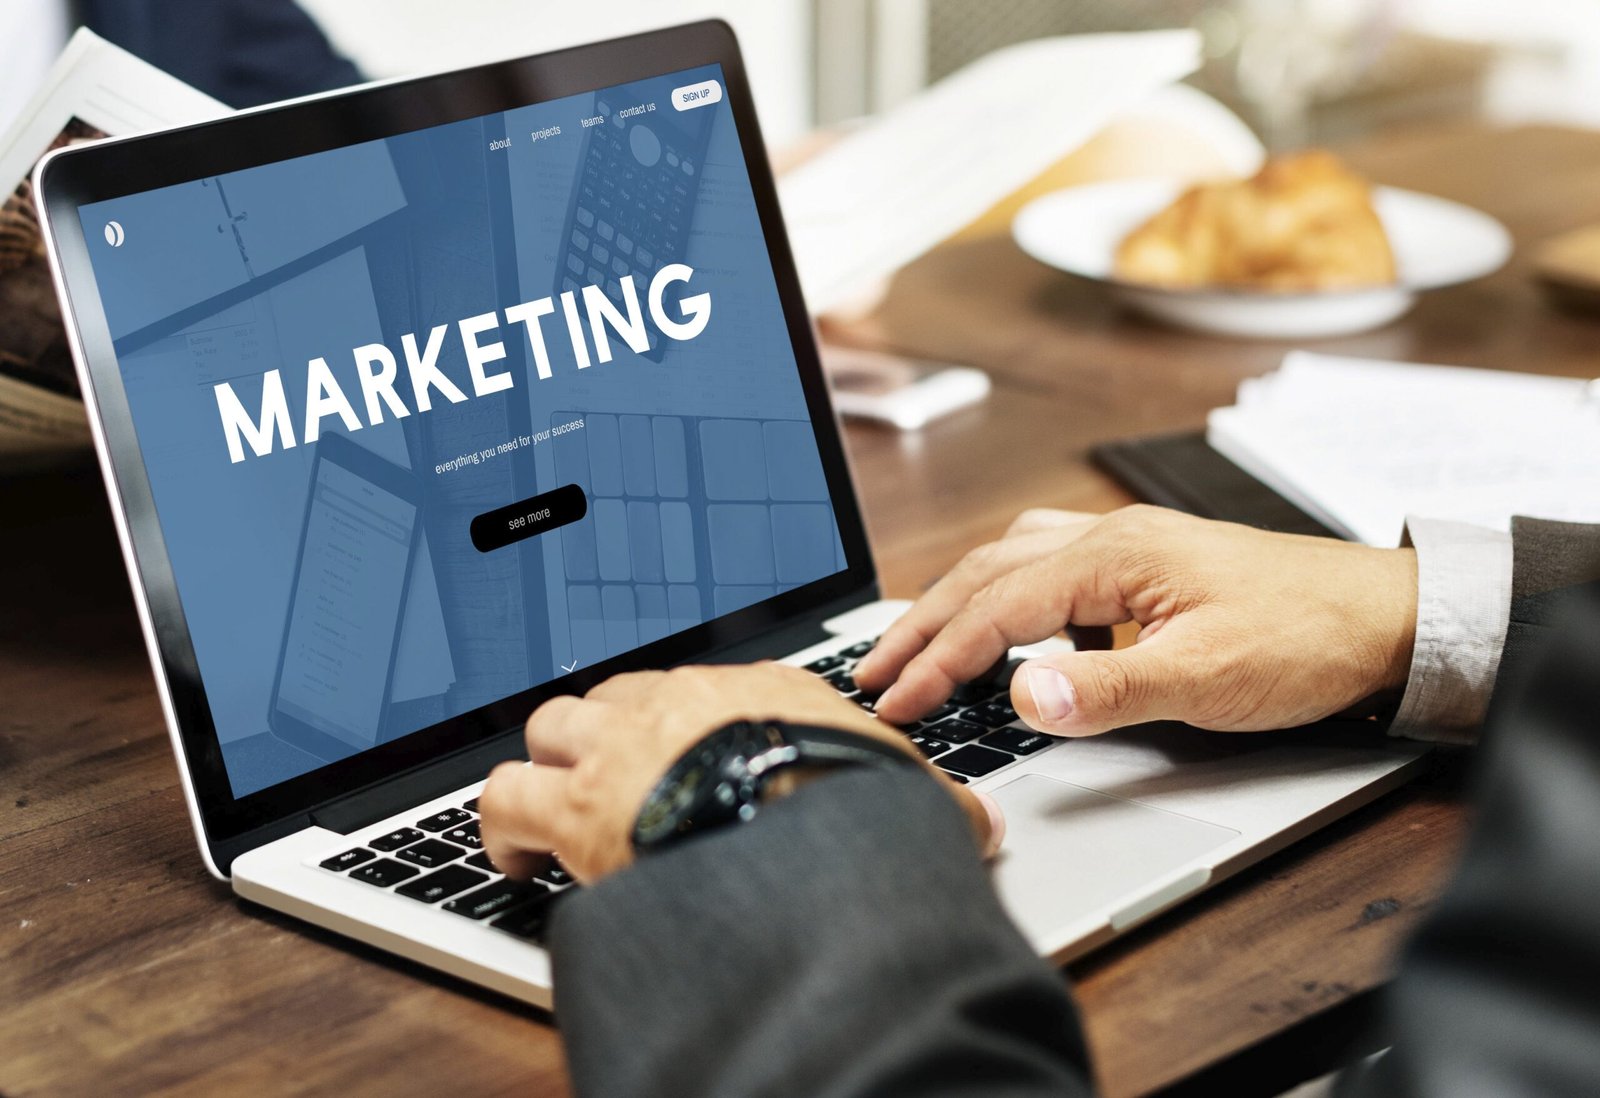 التسويق الإلكتروني: استراتيجيات وطرق ناجحة لتعزيز عمليات البيع عبر الإنترنت